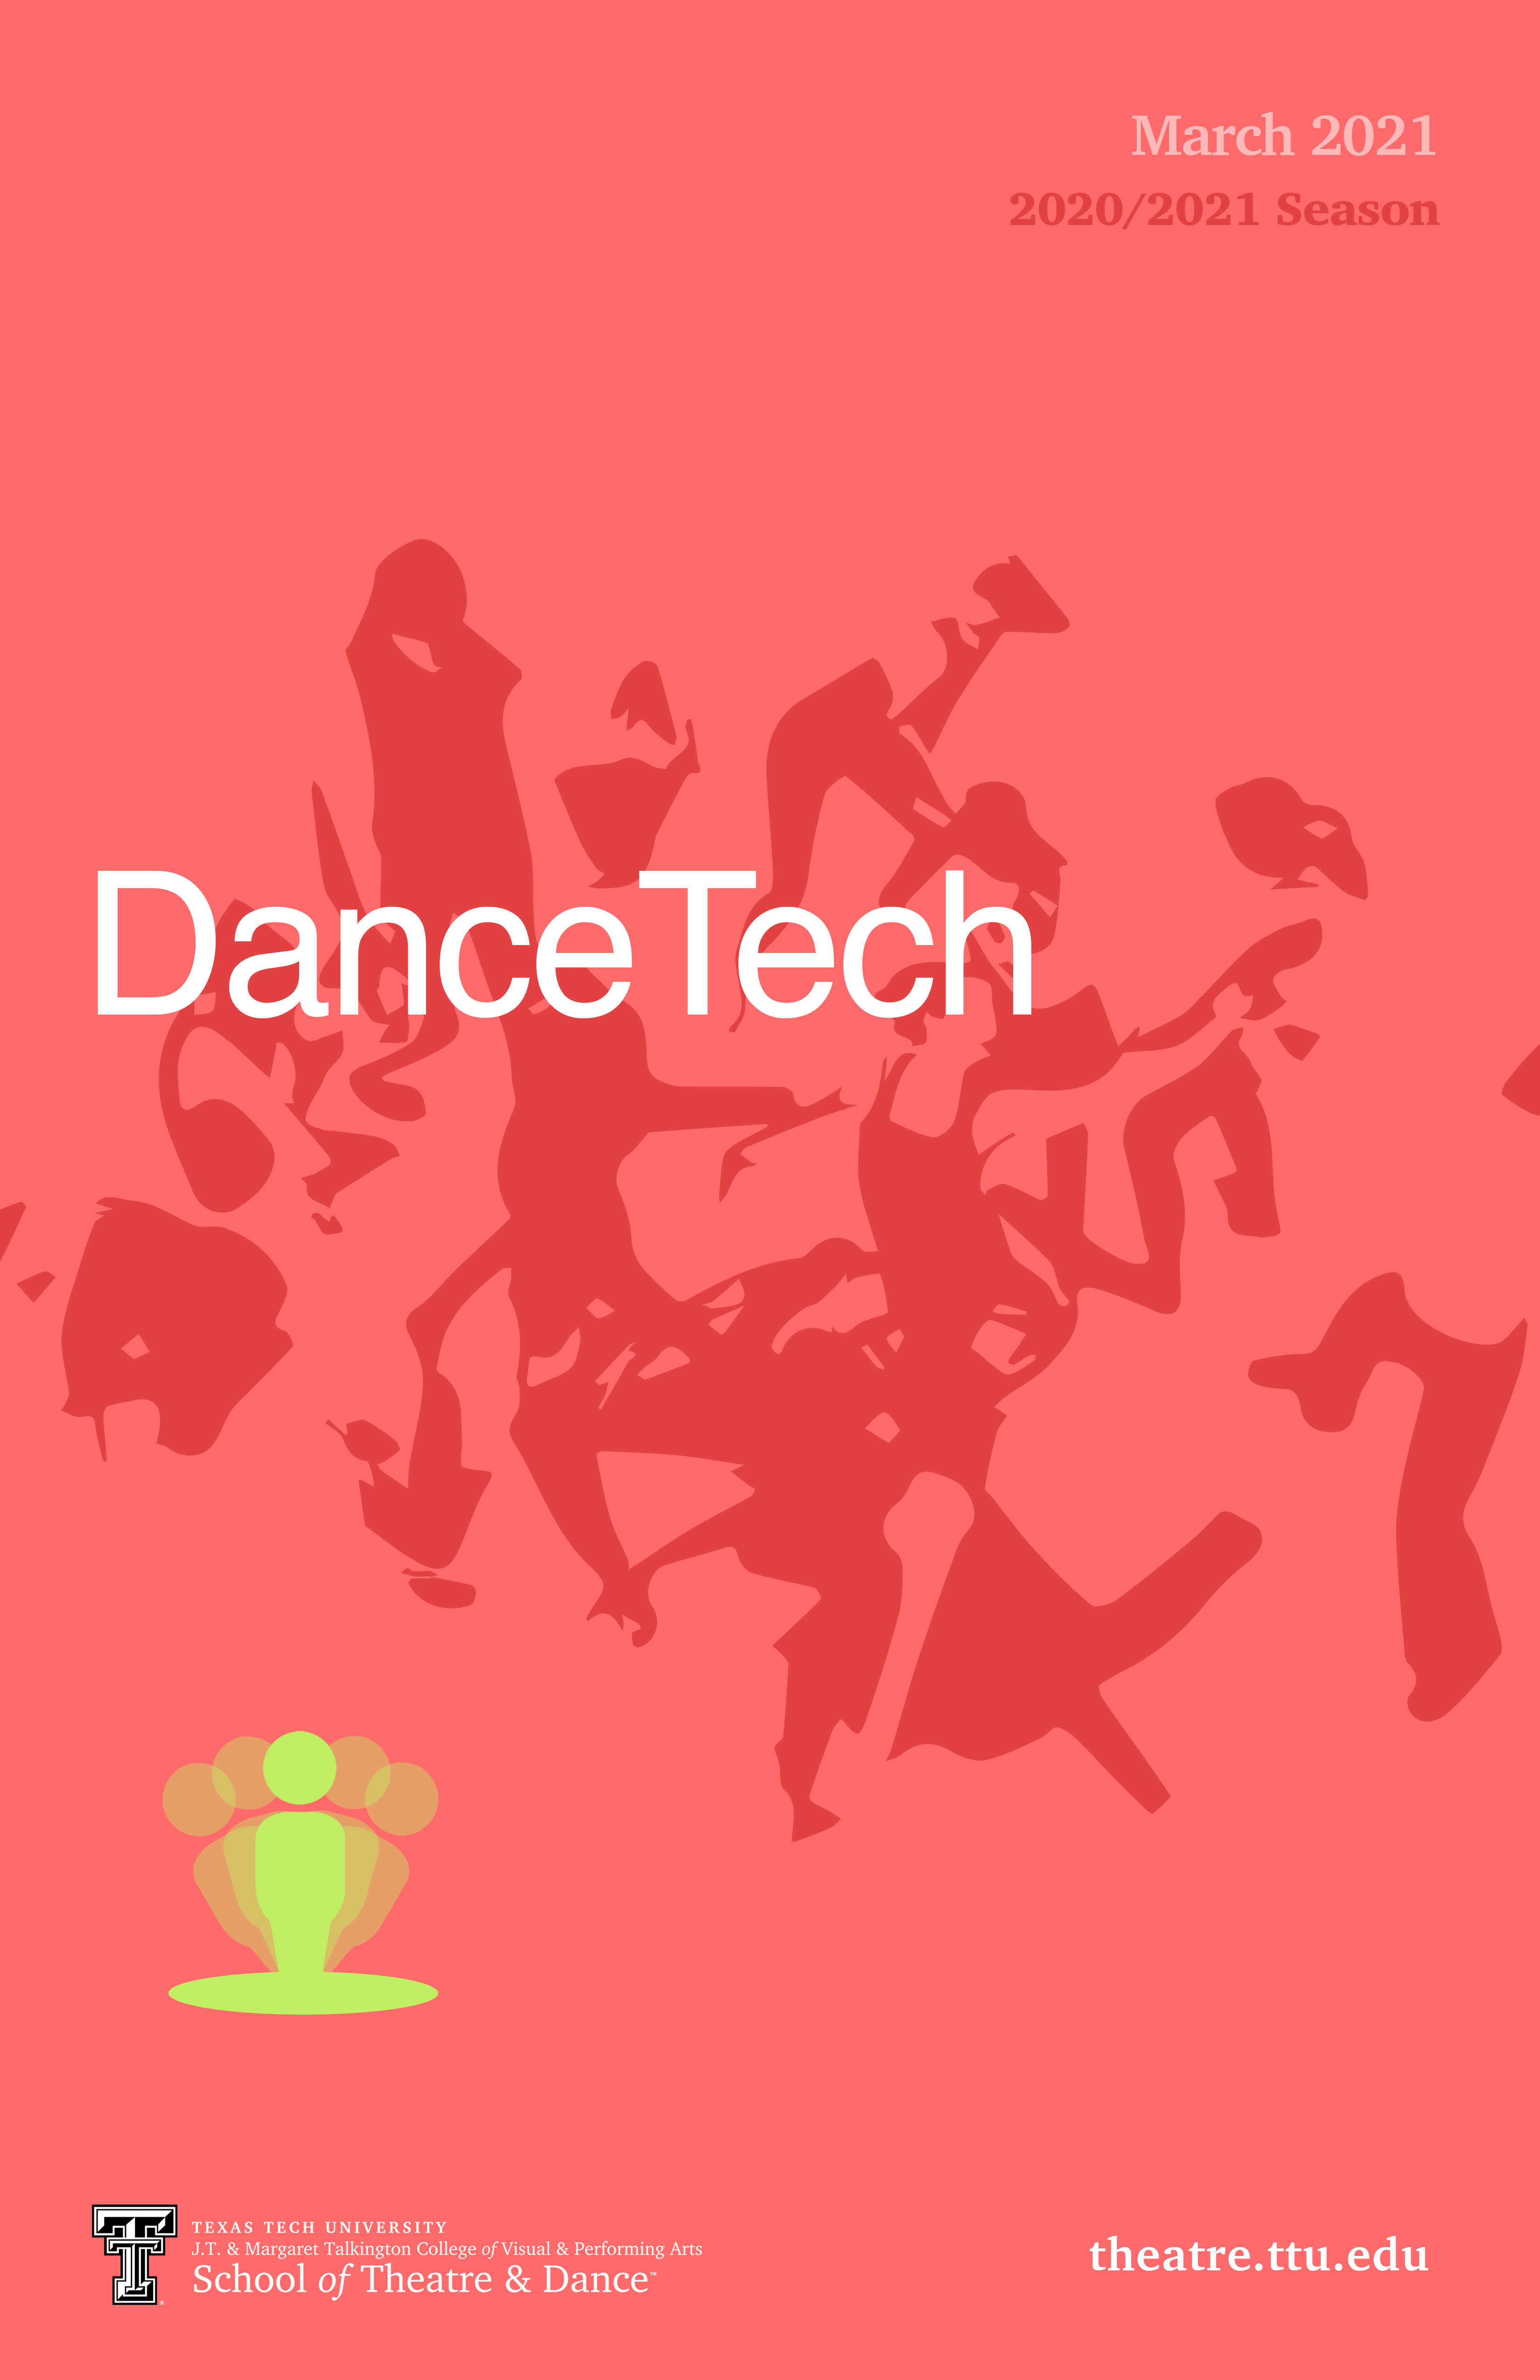 dancetech